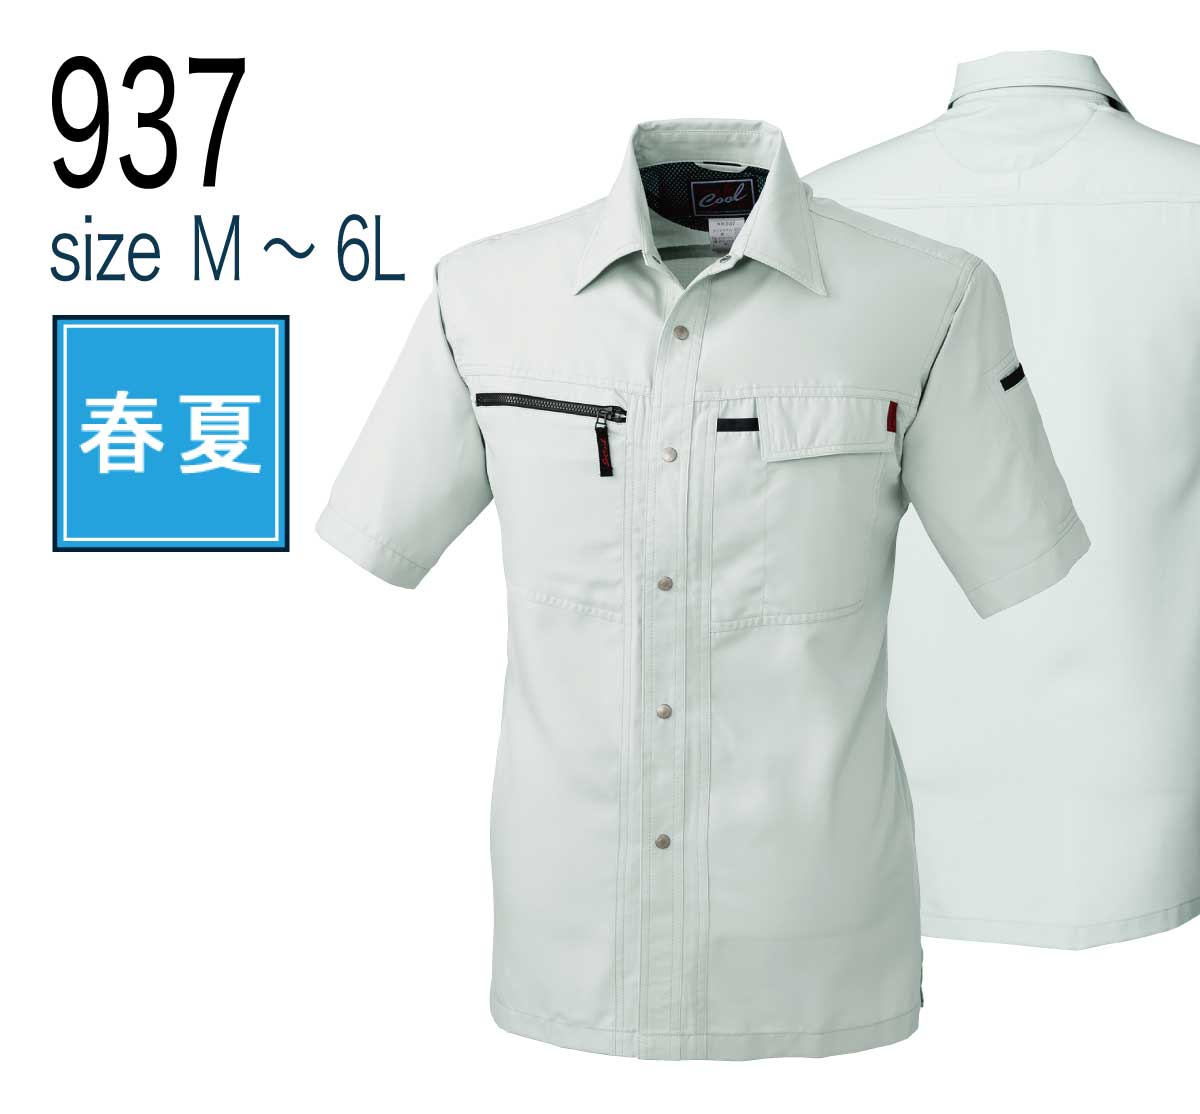 桑和 SOWA 937 作業着 作業服 半袖シャツ 制電性素材 吸水速乾 春夏